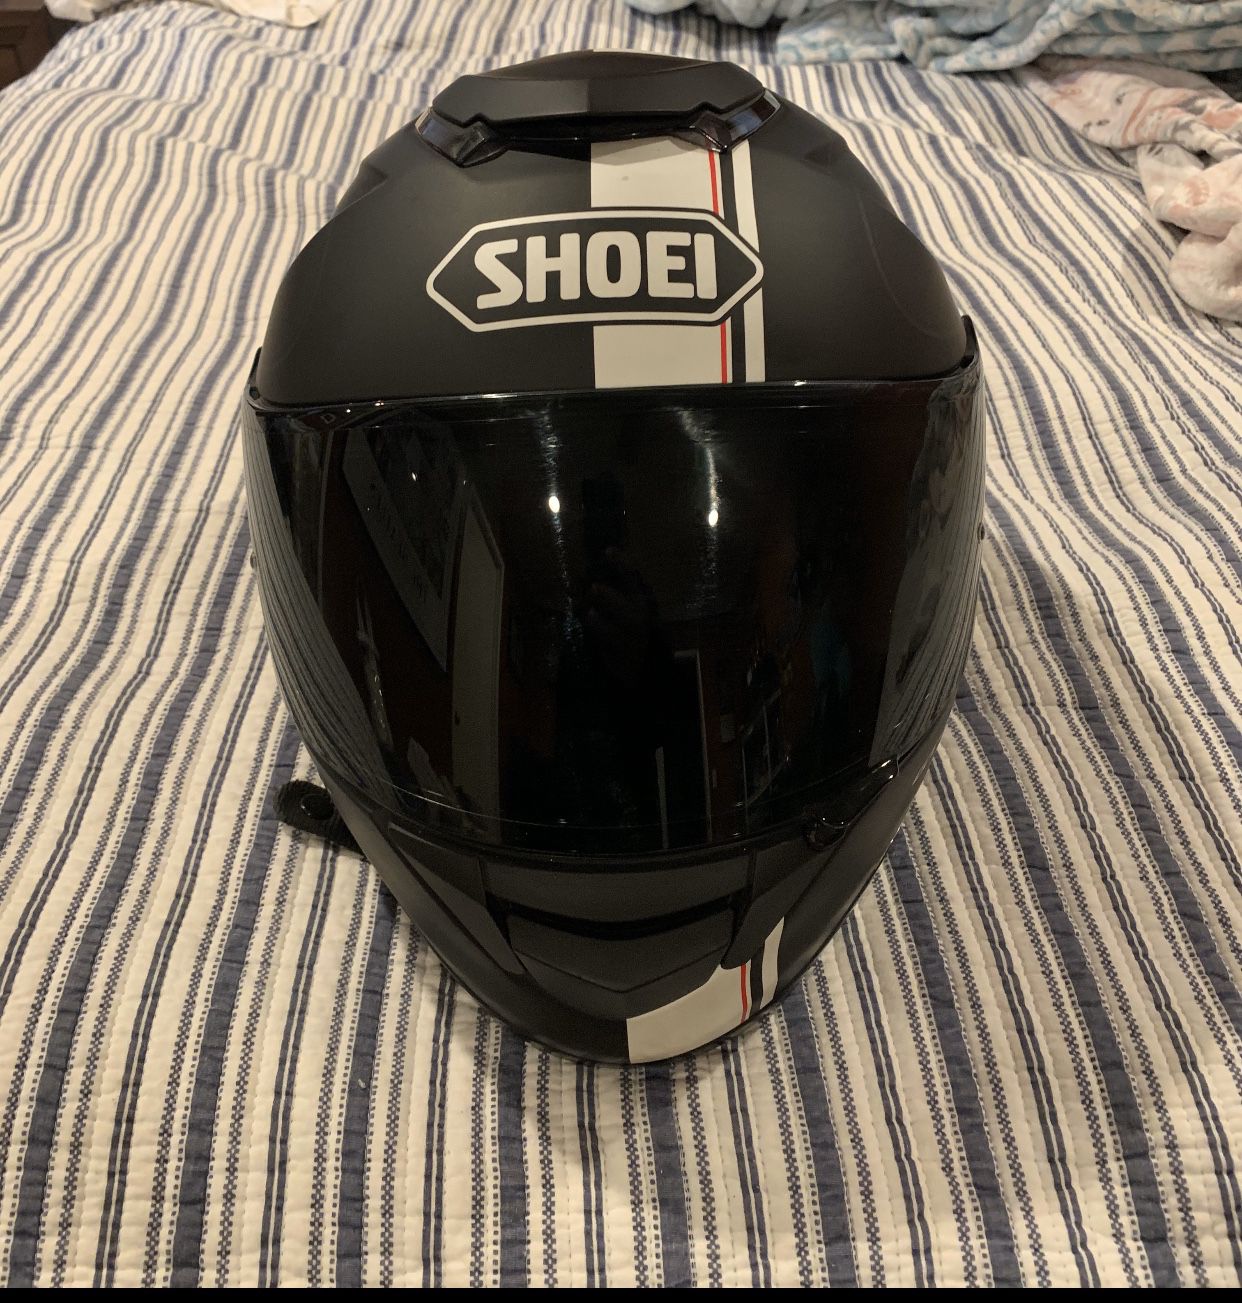 SHOEI Motorcycle helmet